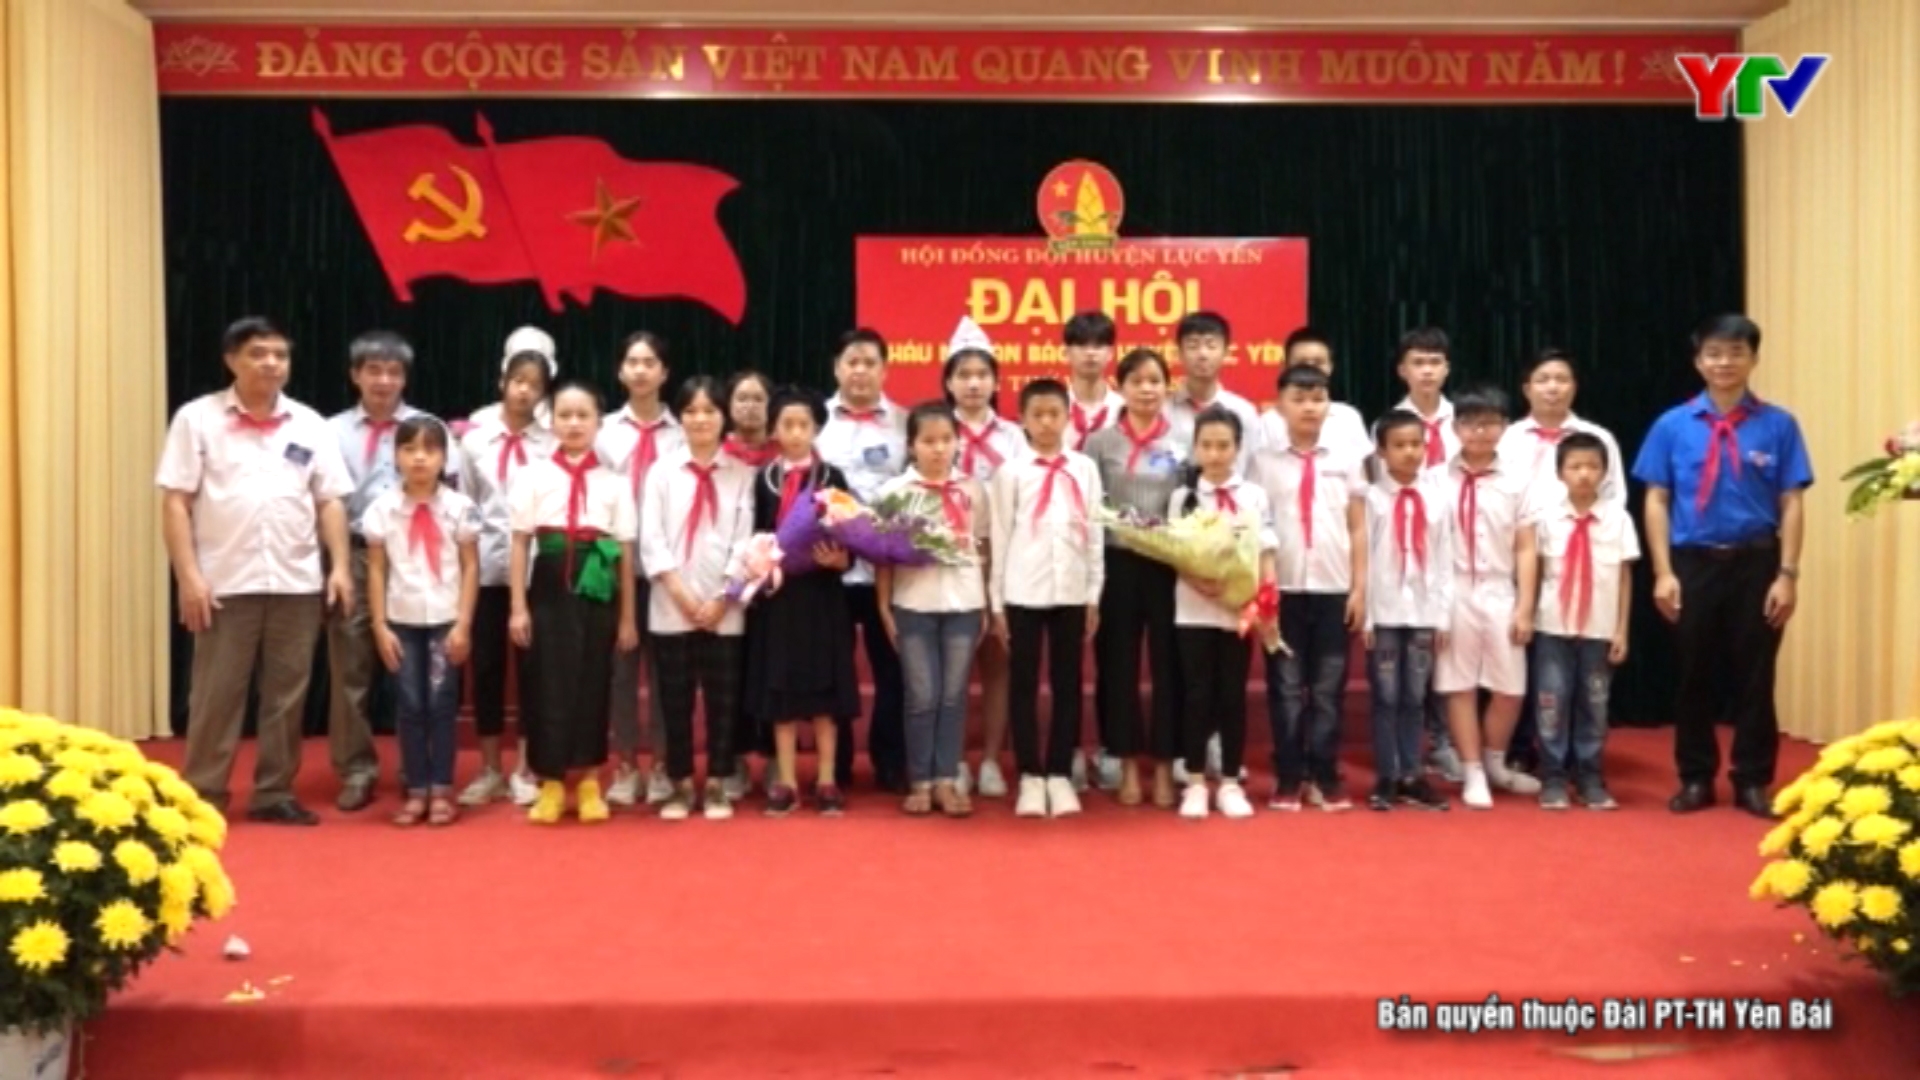 Đại hội đại biểu cháu ngoan Bác Hồ huyện Lục Yên lần thứ 6 năm 2020